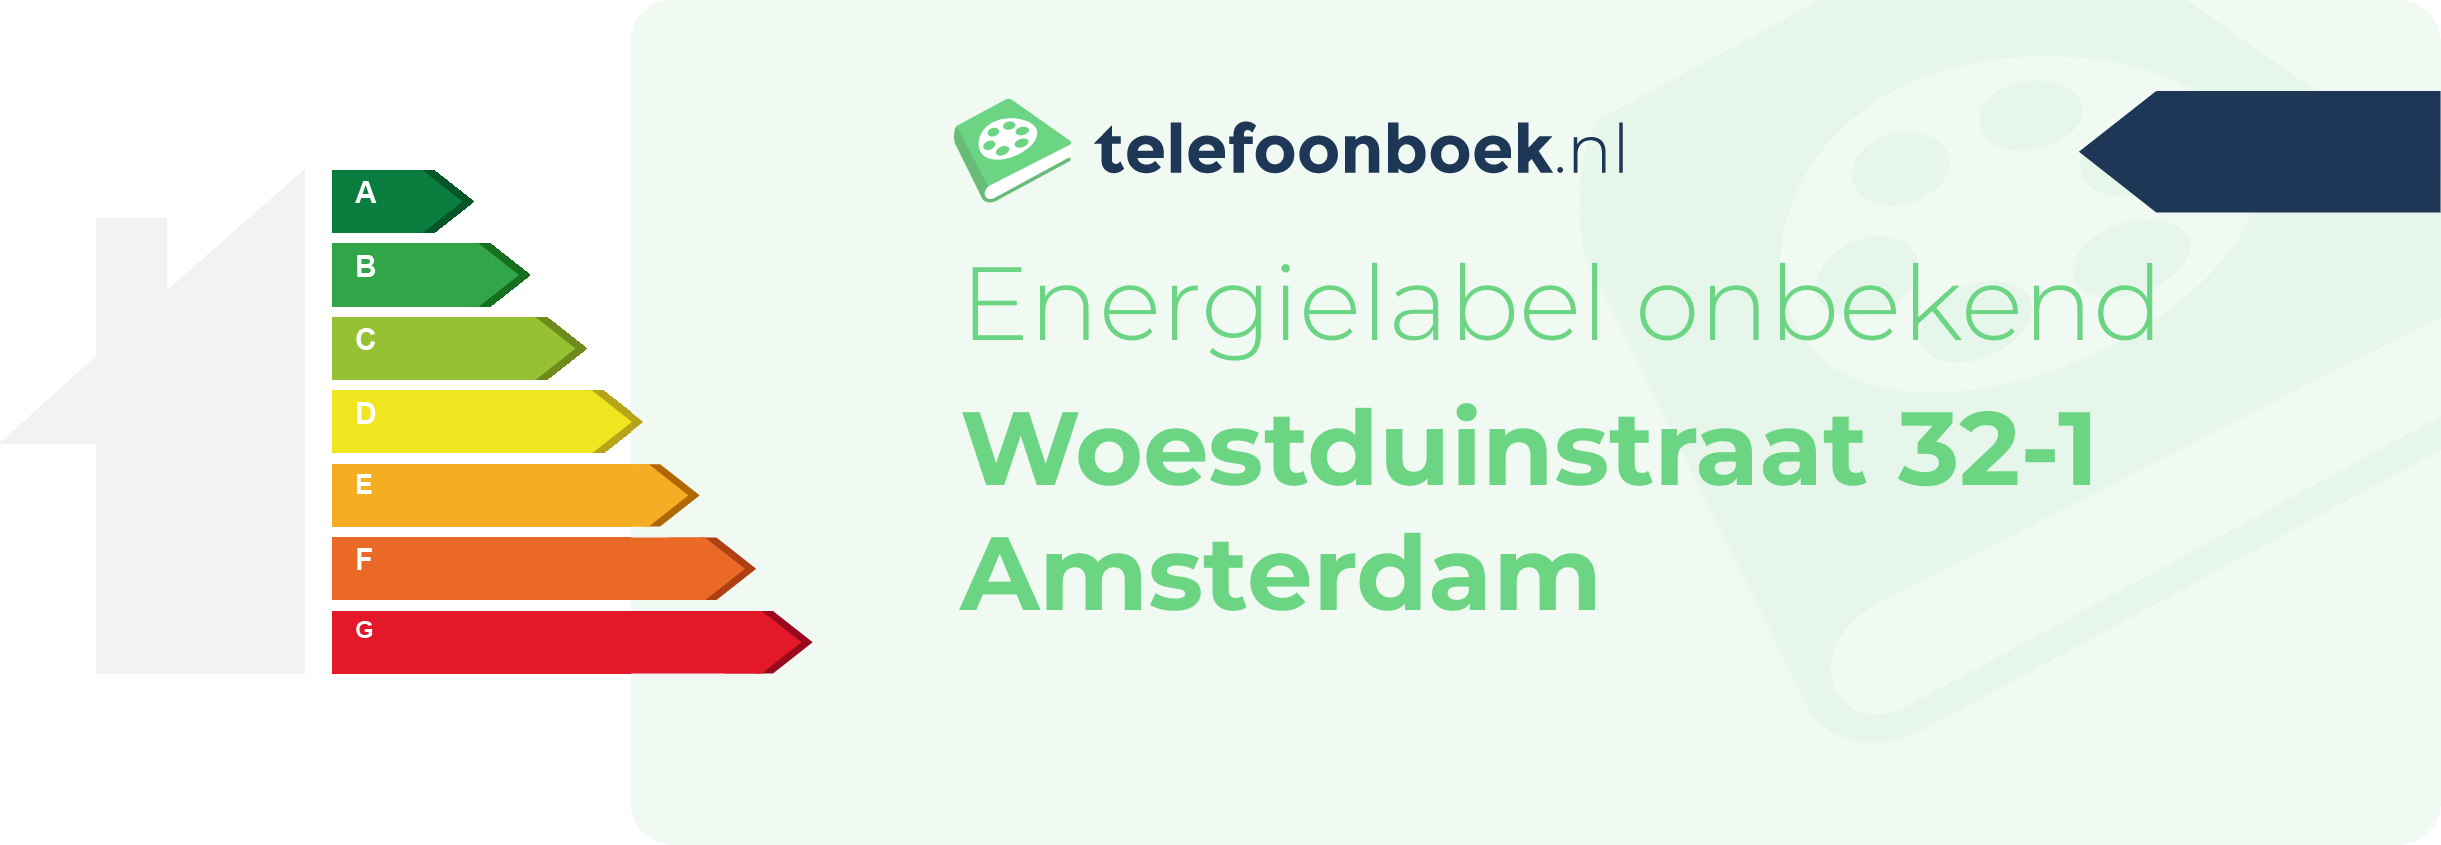 Energielabel Woestduinstraat 32-1 Amsterdam